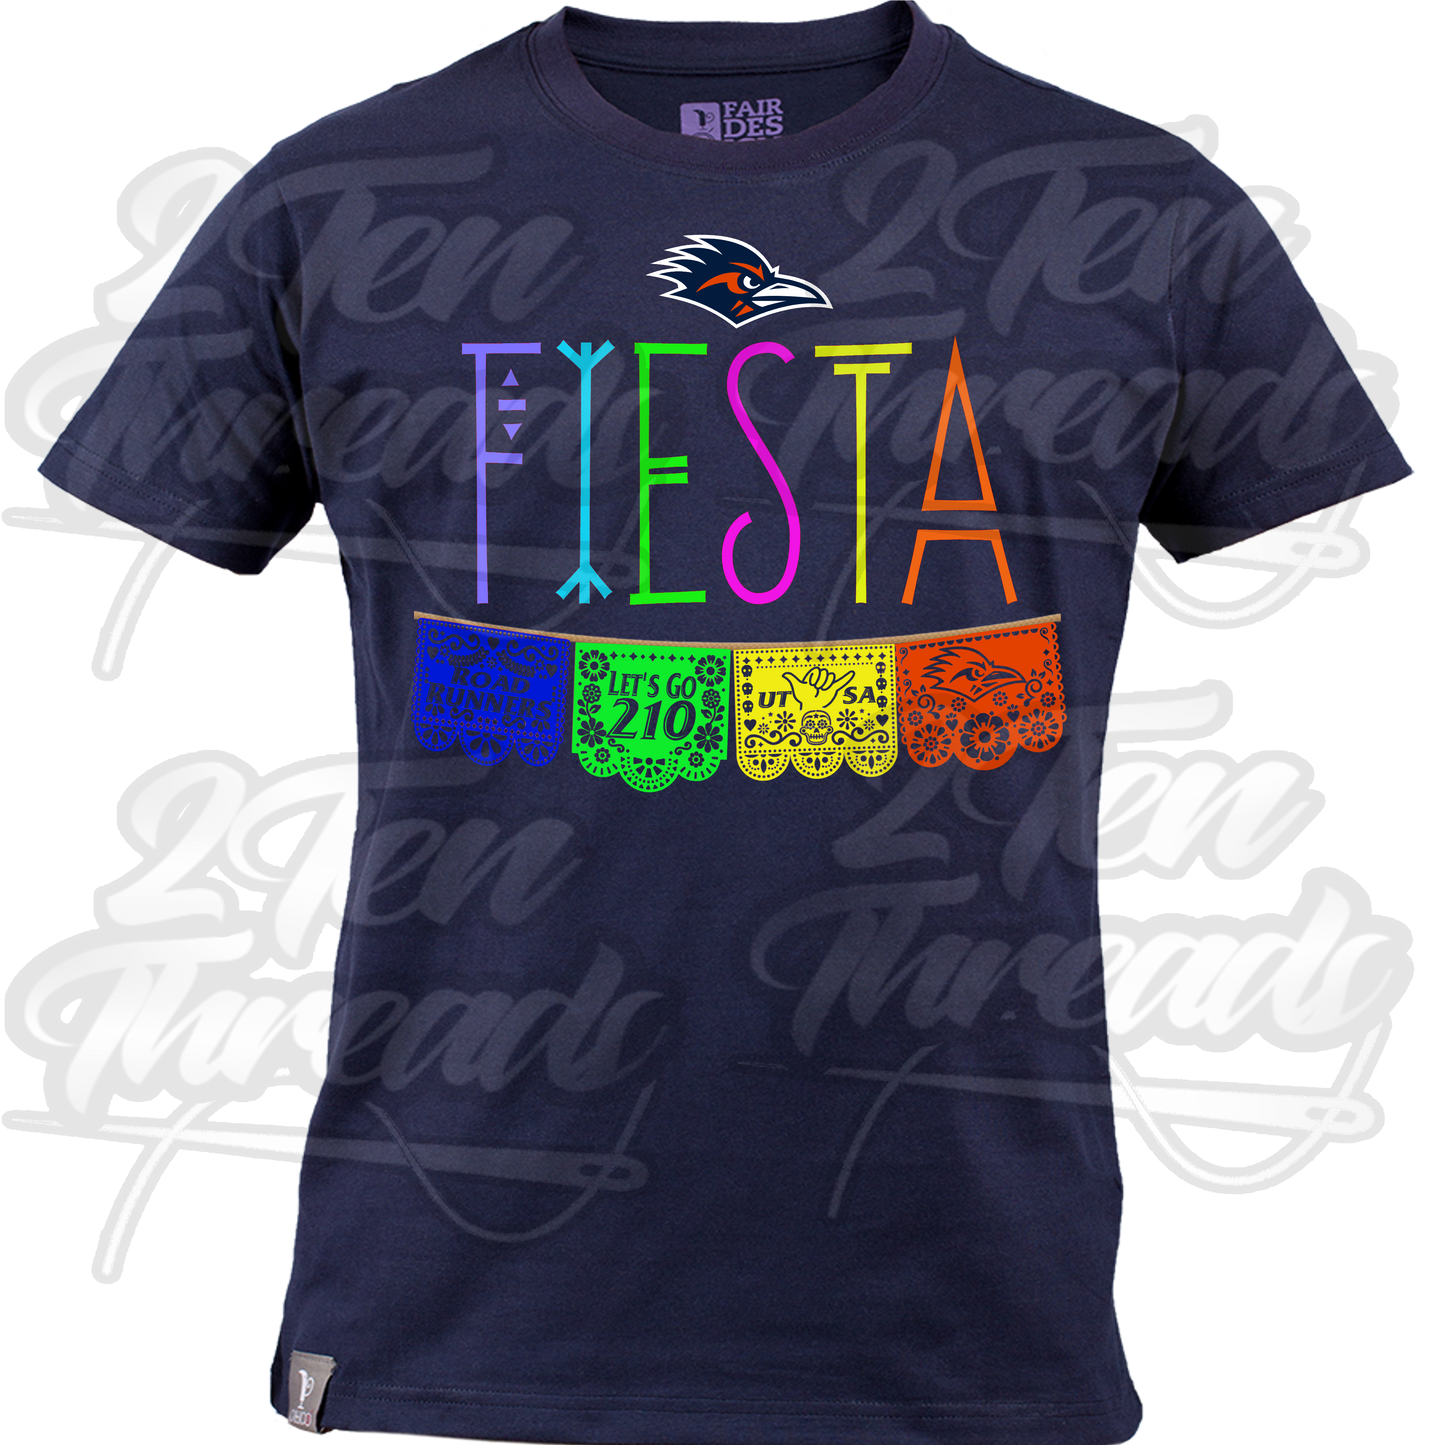 Fiesta Runner Shirt